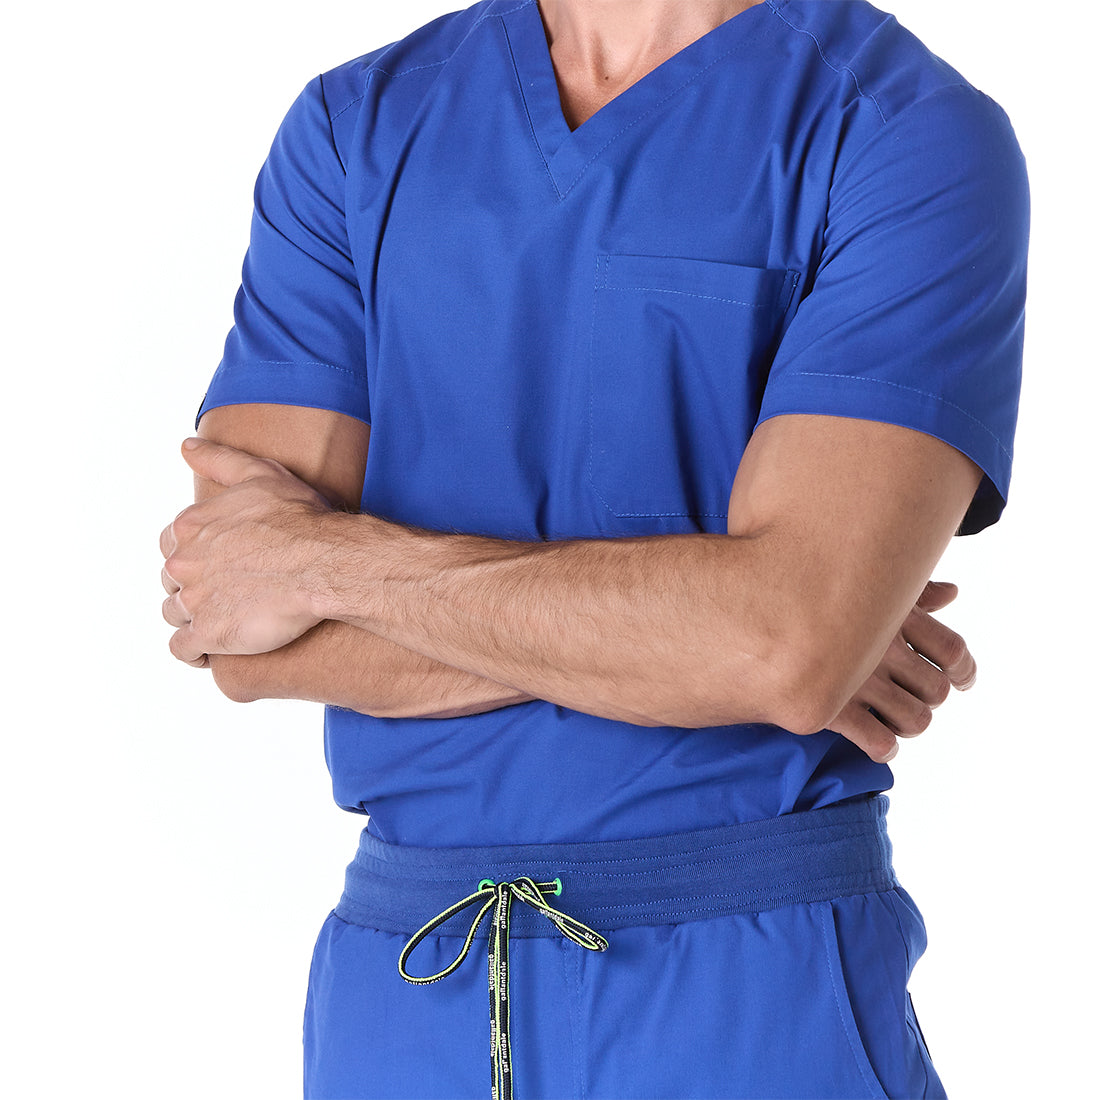 Hombre vistiendo conjunto sanitario color azul rey con escote en v y bolsa con cinta porta gafete